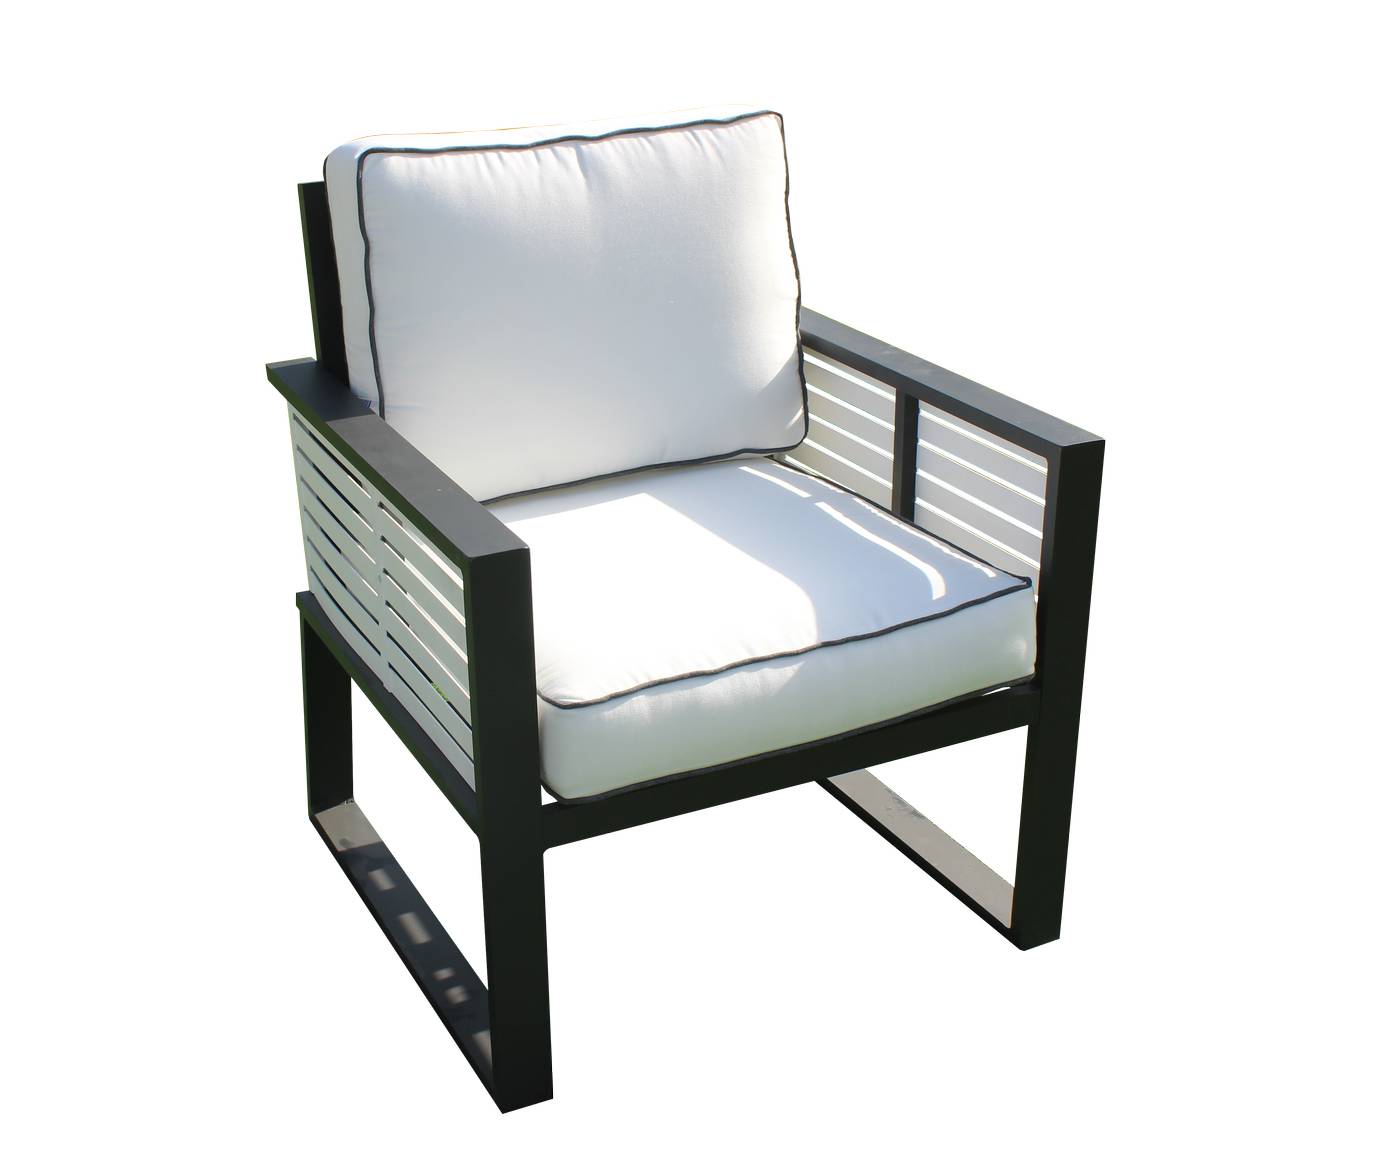 Lujoso sillón relax de alumnio bicolor, con cojines gran confort desenfundables.